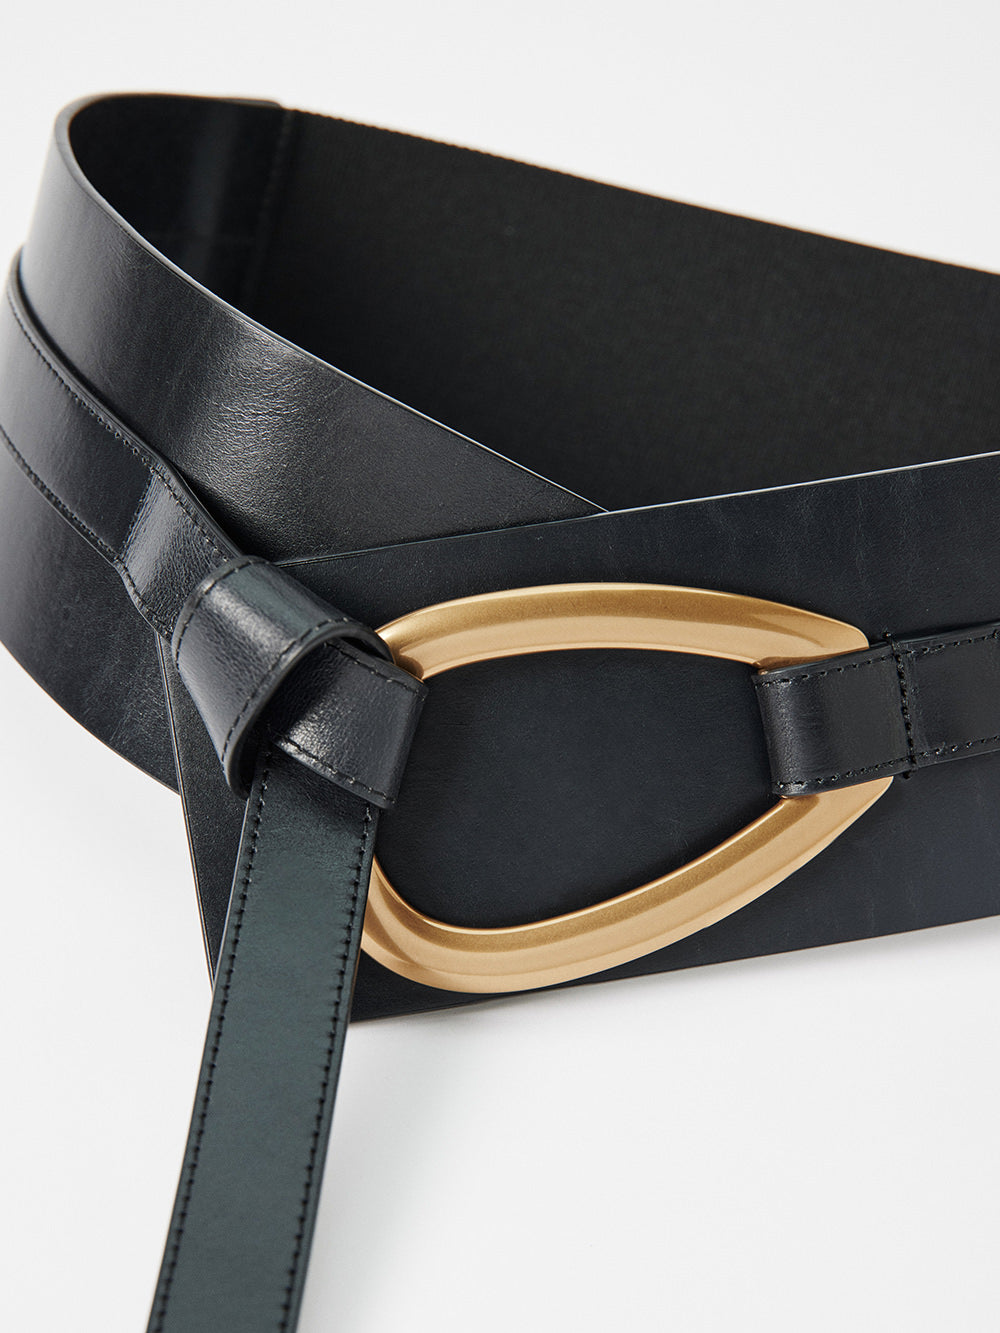 The Feature Buckle Waist Belt